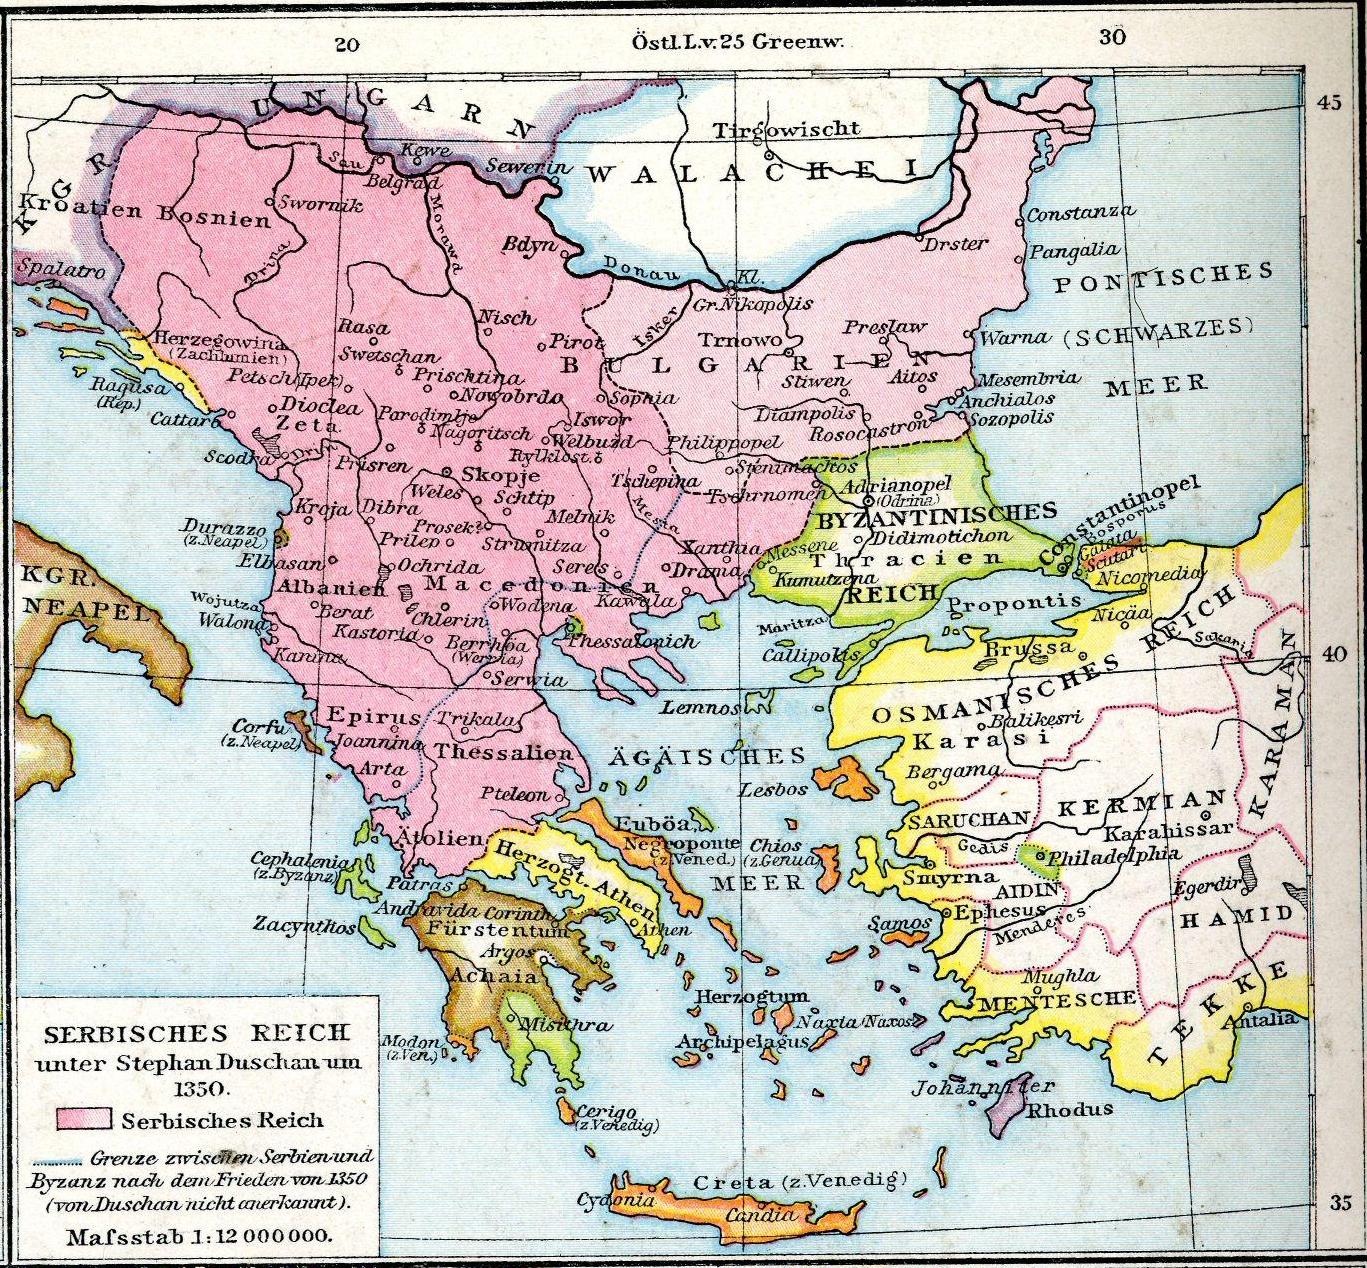 Албанија и Стара Србија су расрбљене земље